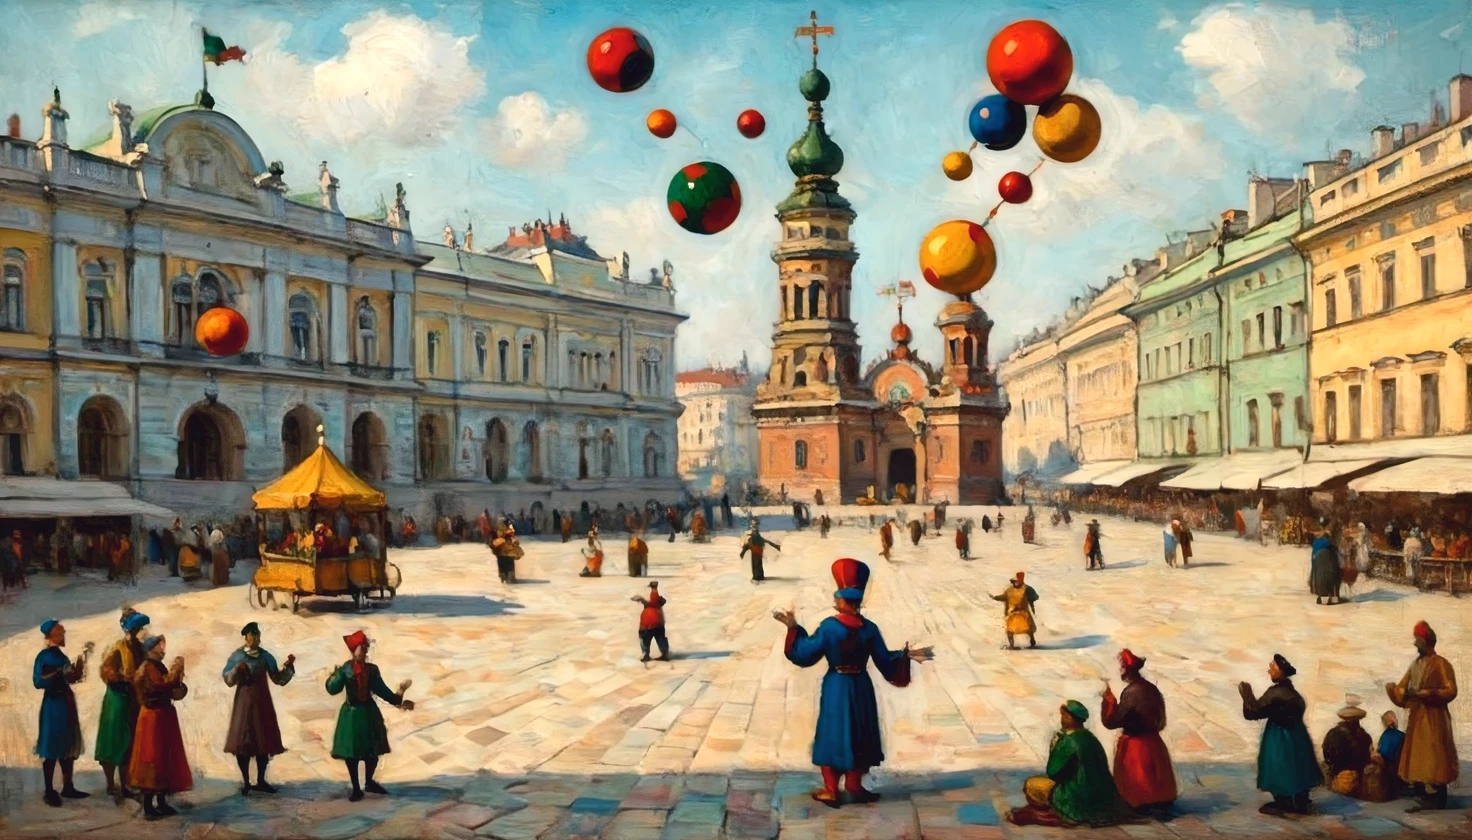 Peinture à l&#39;huile sur toile de l&#39;artiste Vasily Kandinsky, ((bouffon-jongleur)) sur la Place du Palais de St. Saint-Pétersbourg, Le bouffon (jonglerie):1.5 boules multicolores, multi-colored balls rotate around Le bouffon, respect total du style de Vasily Kandinsky